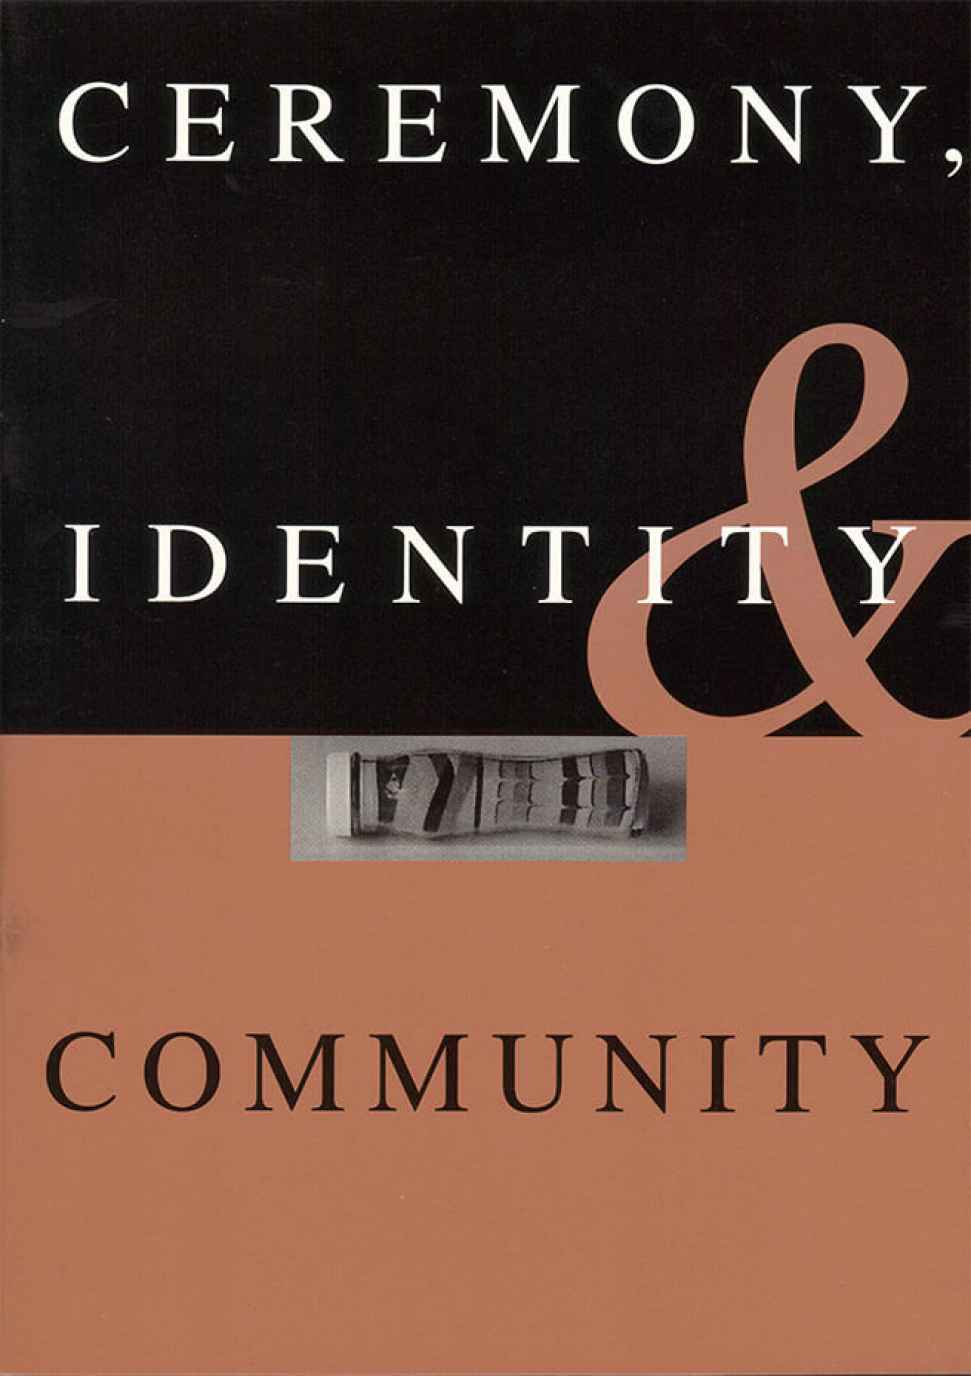 ceremony-identity-and-community.jpg